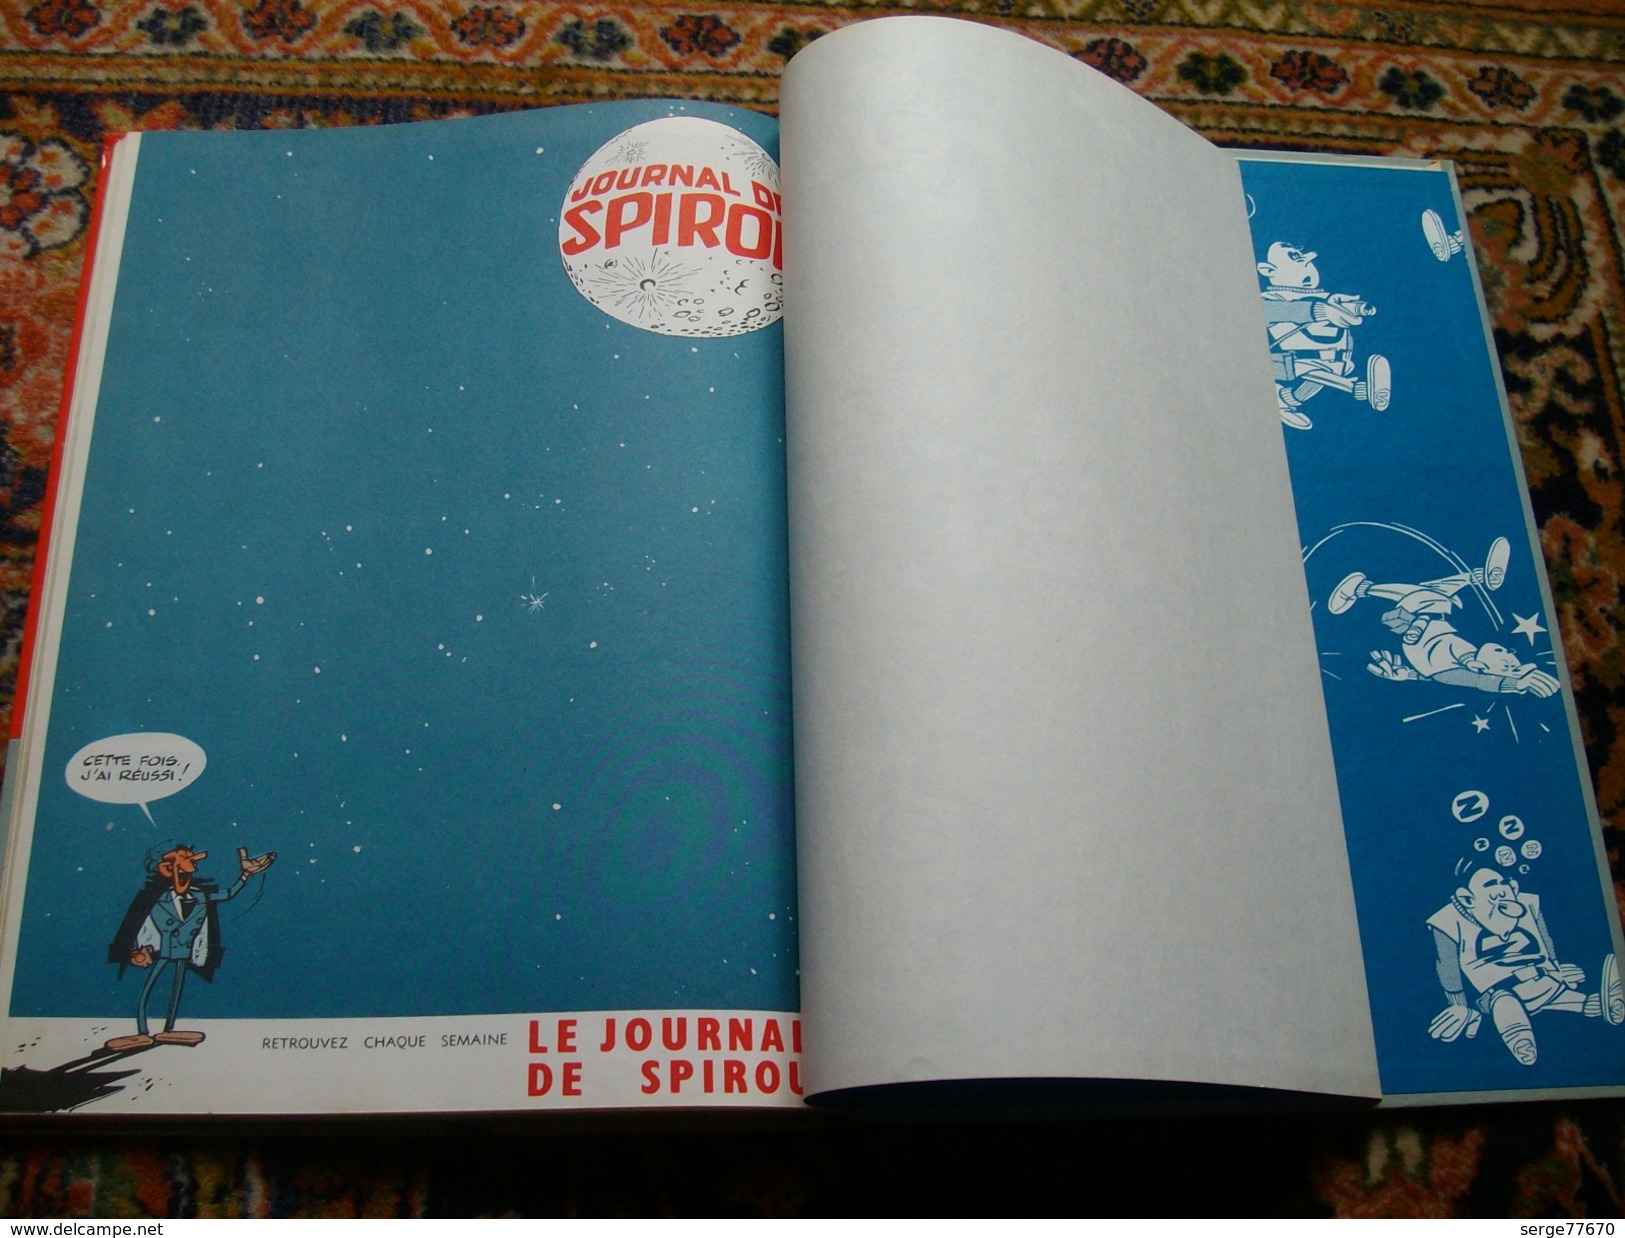 Spirou et Fantasio Franquin Z comme Zorglub édition 1967  Dupuis